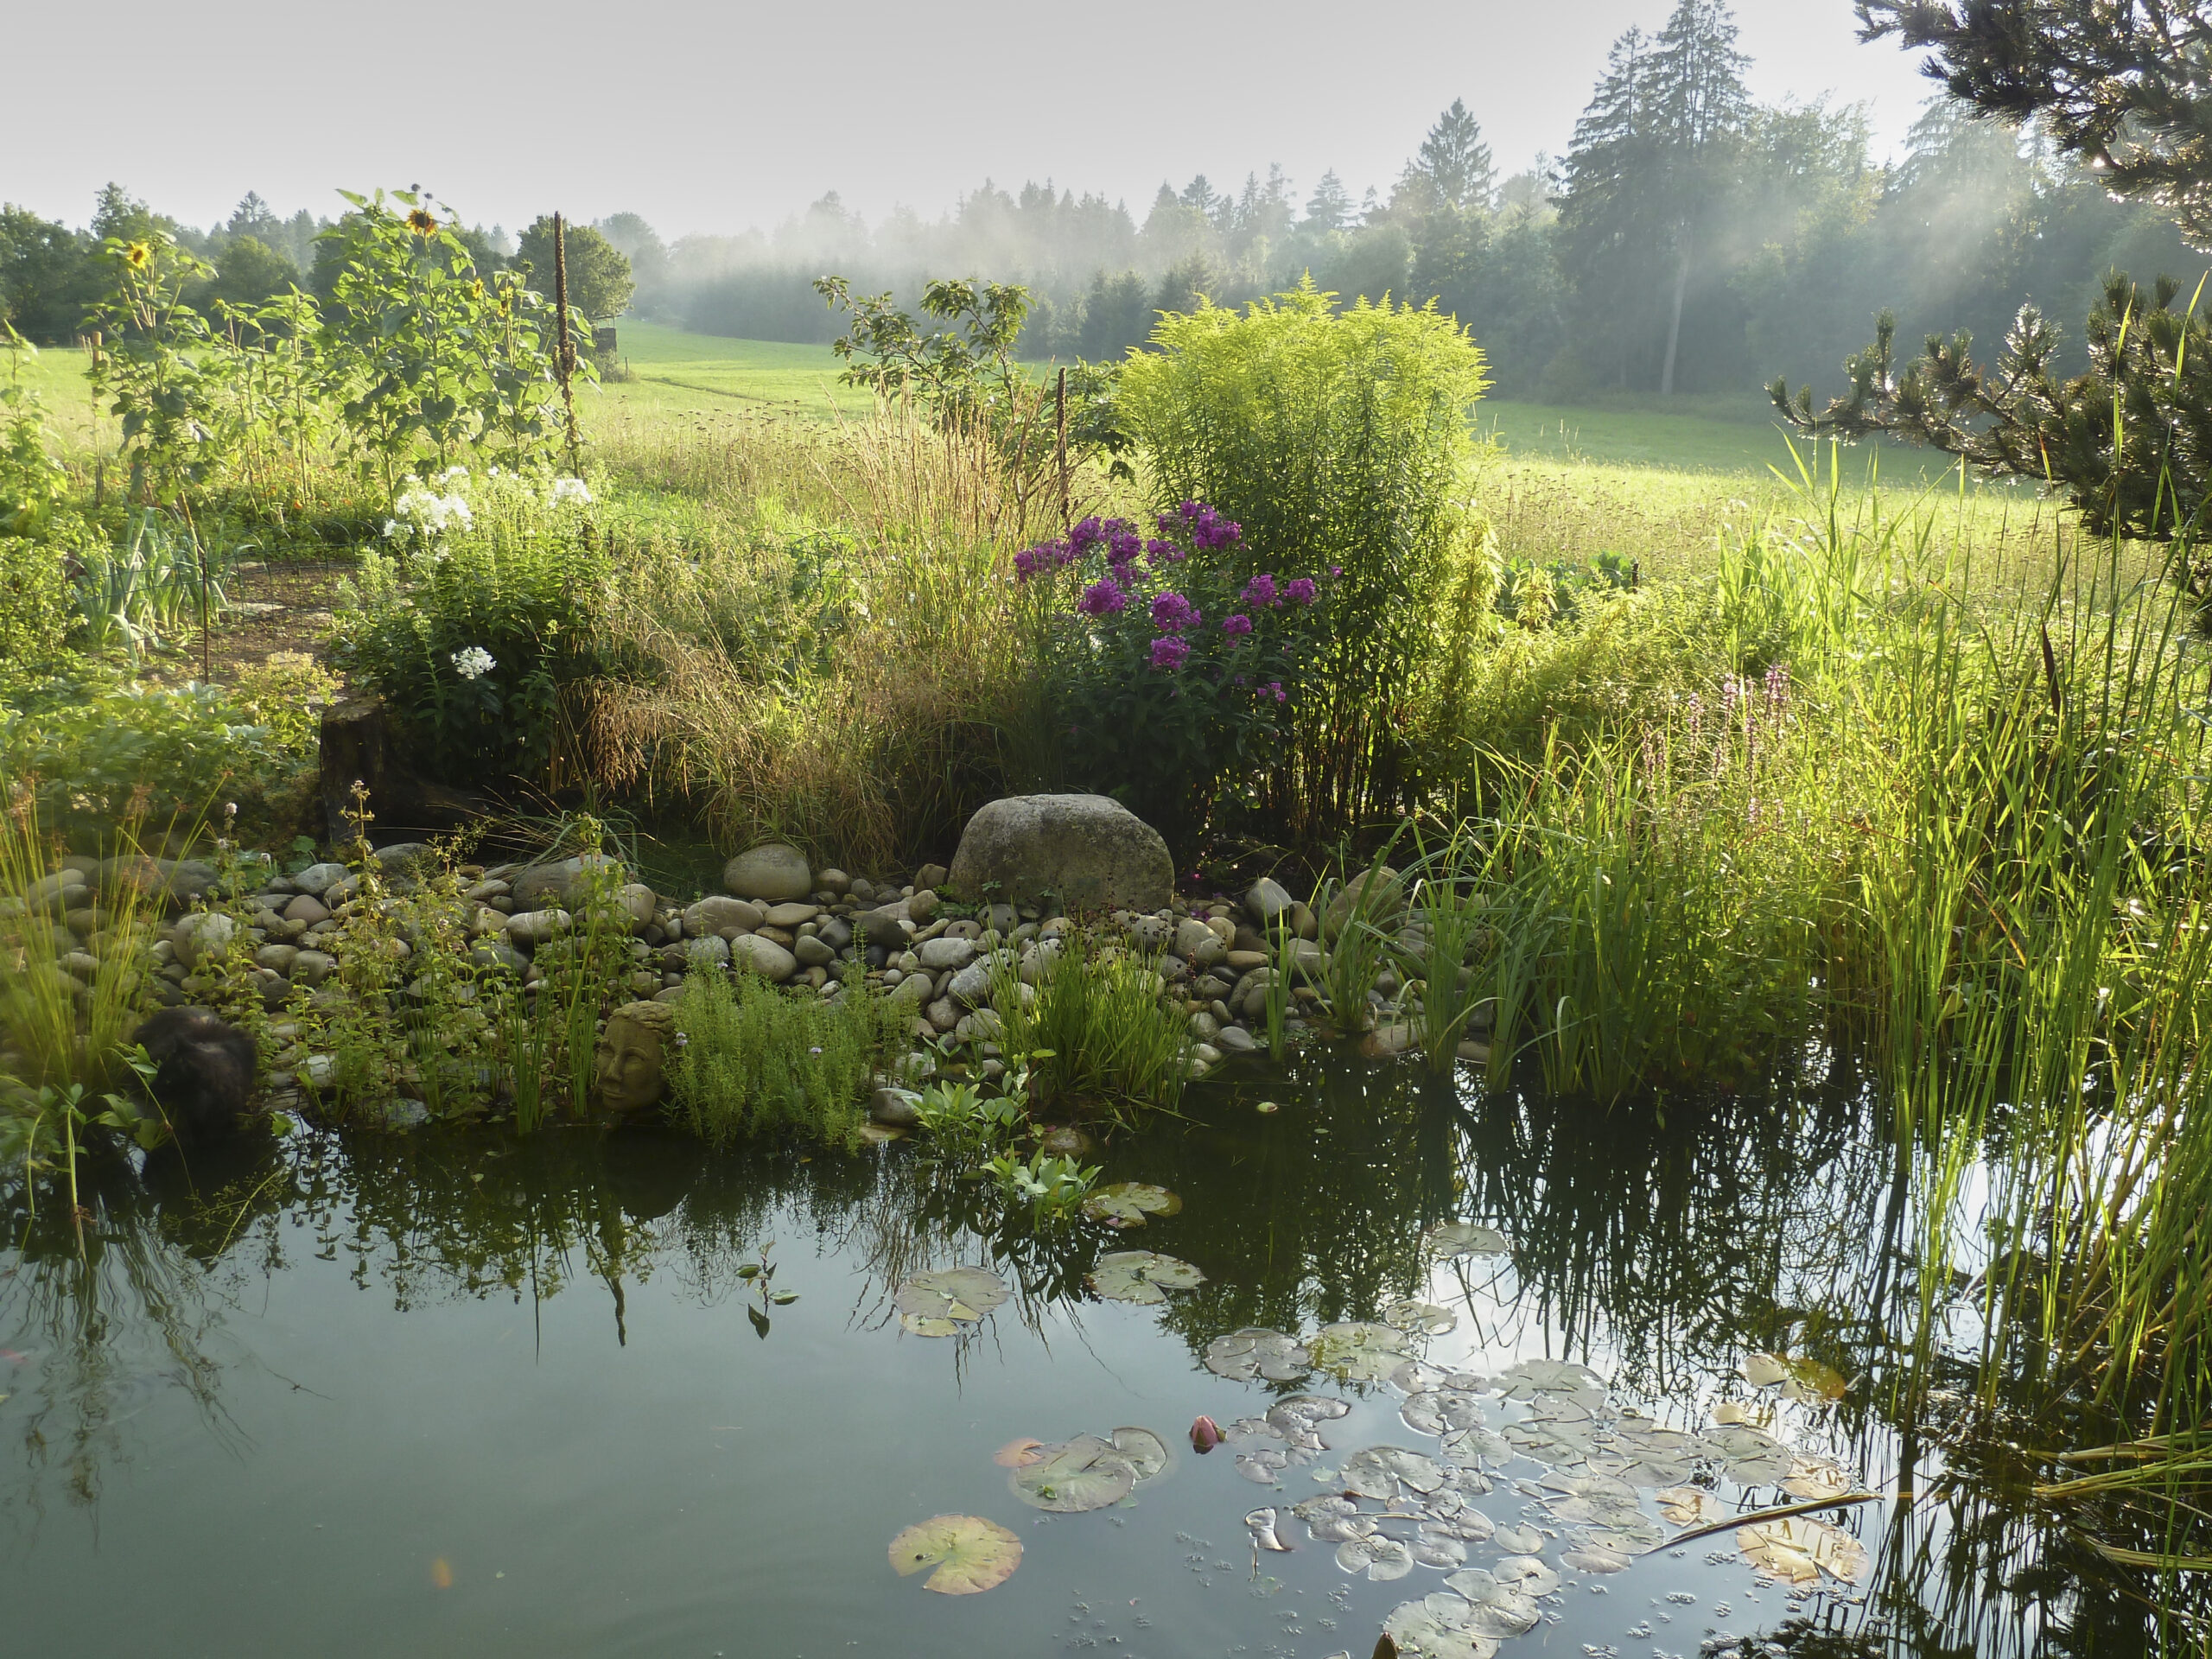 Teich mit Blumen und Hecken drumherum, dahinter eine große Wies und Wald im Hintergrund